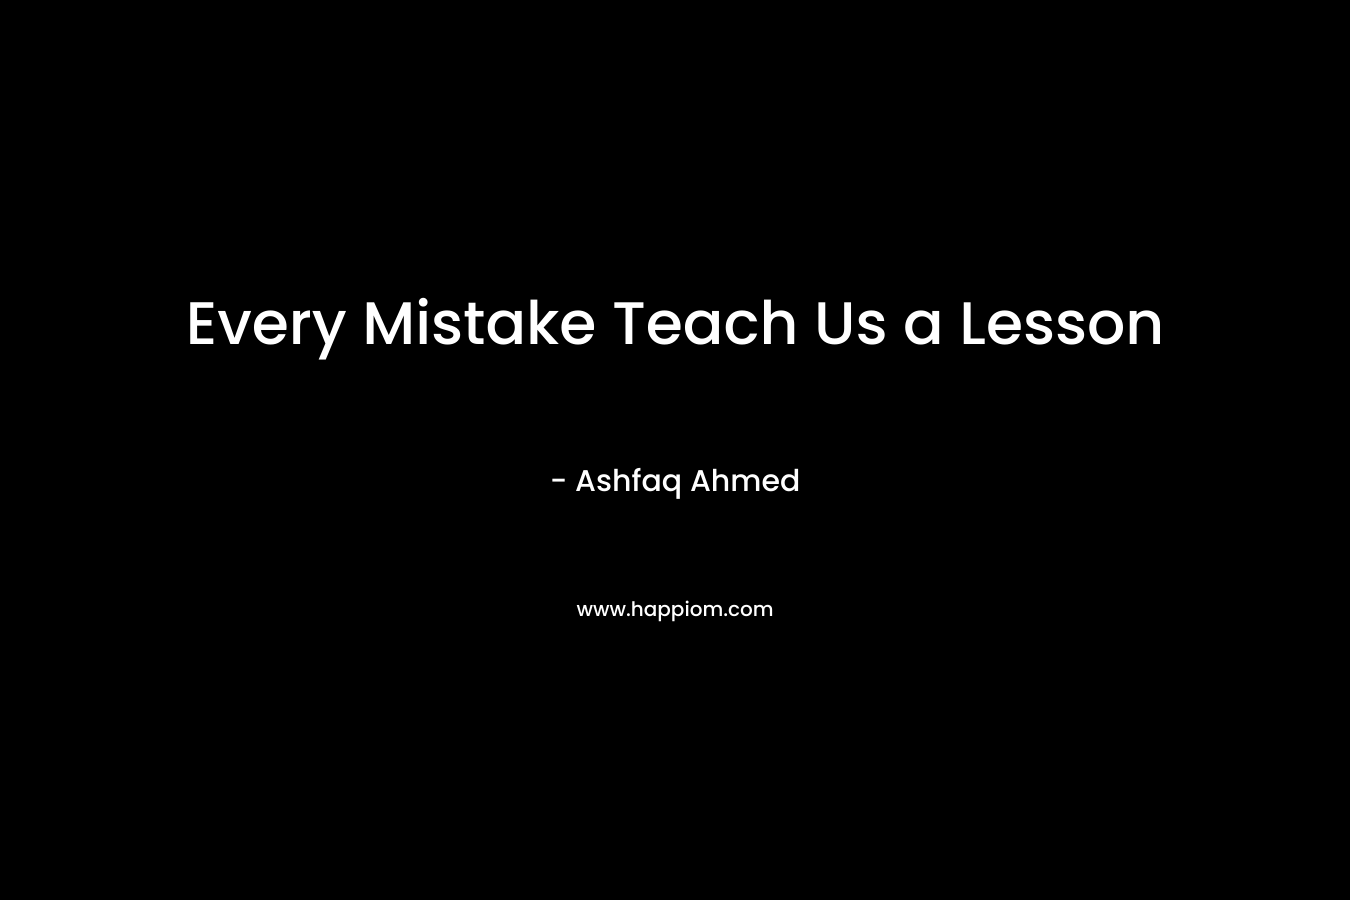 Every Mistake Teach Us a Lesson